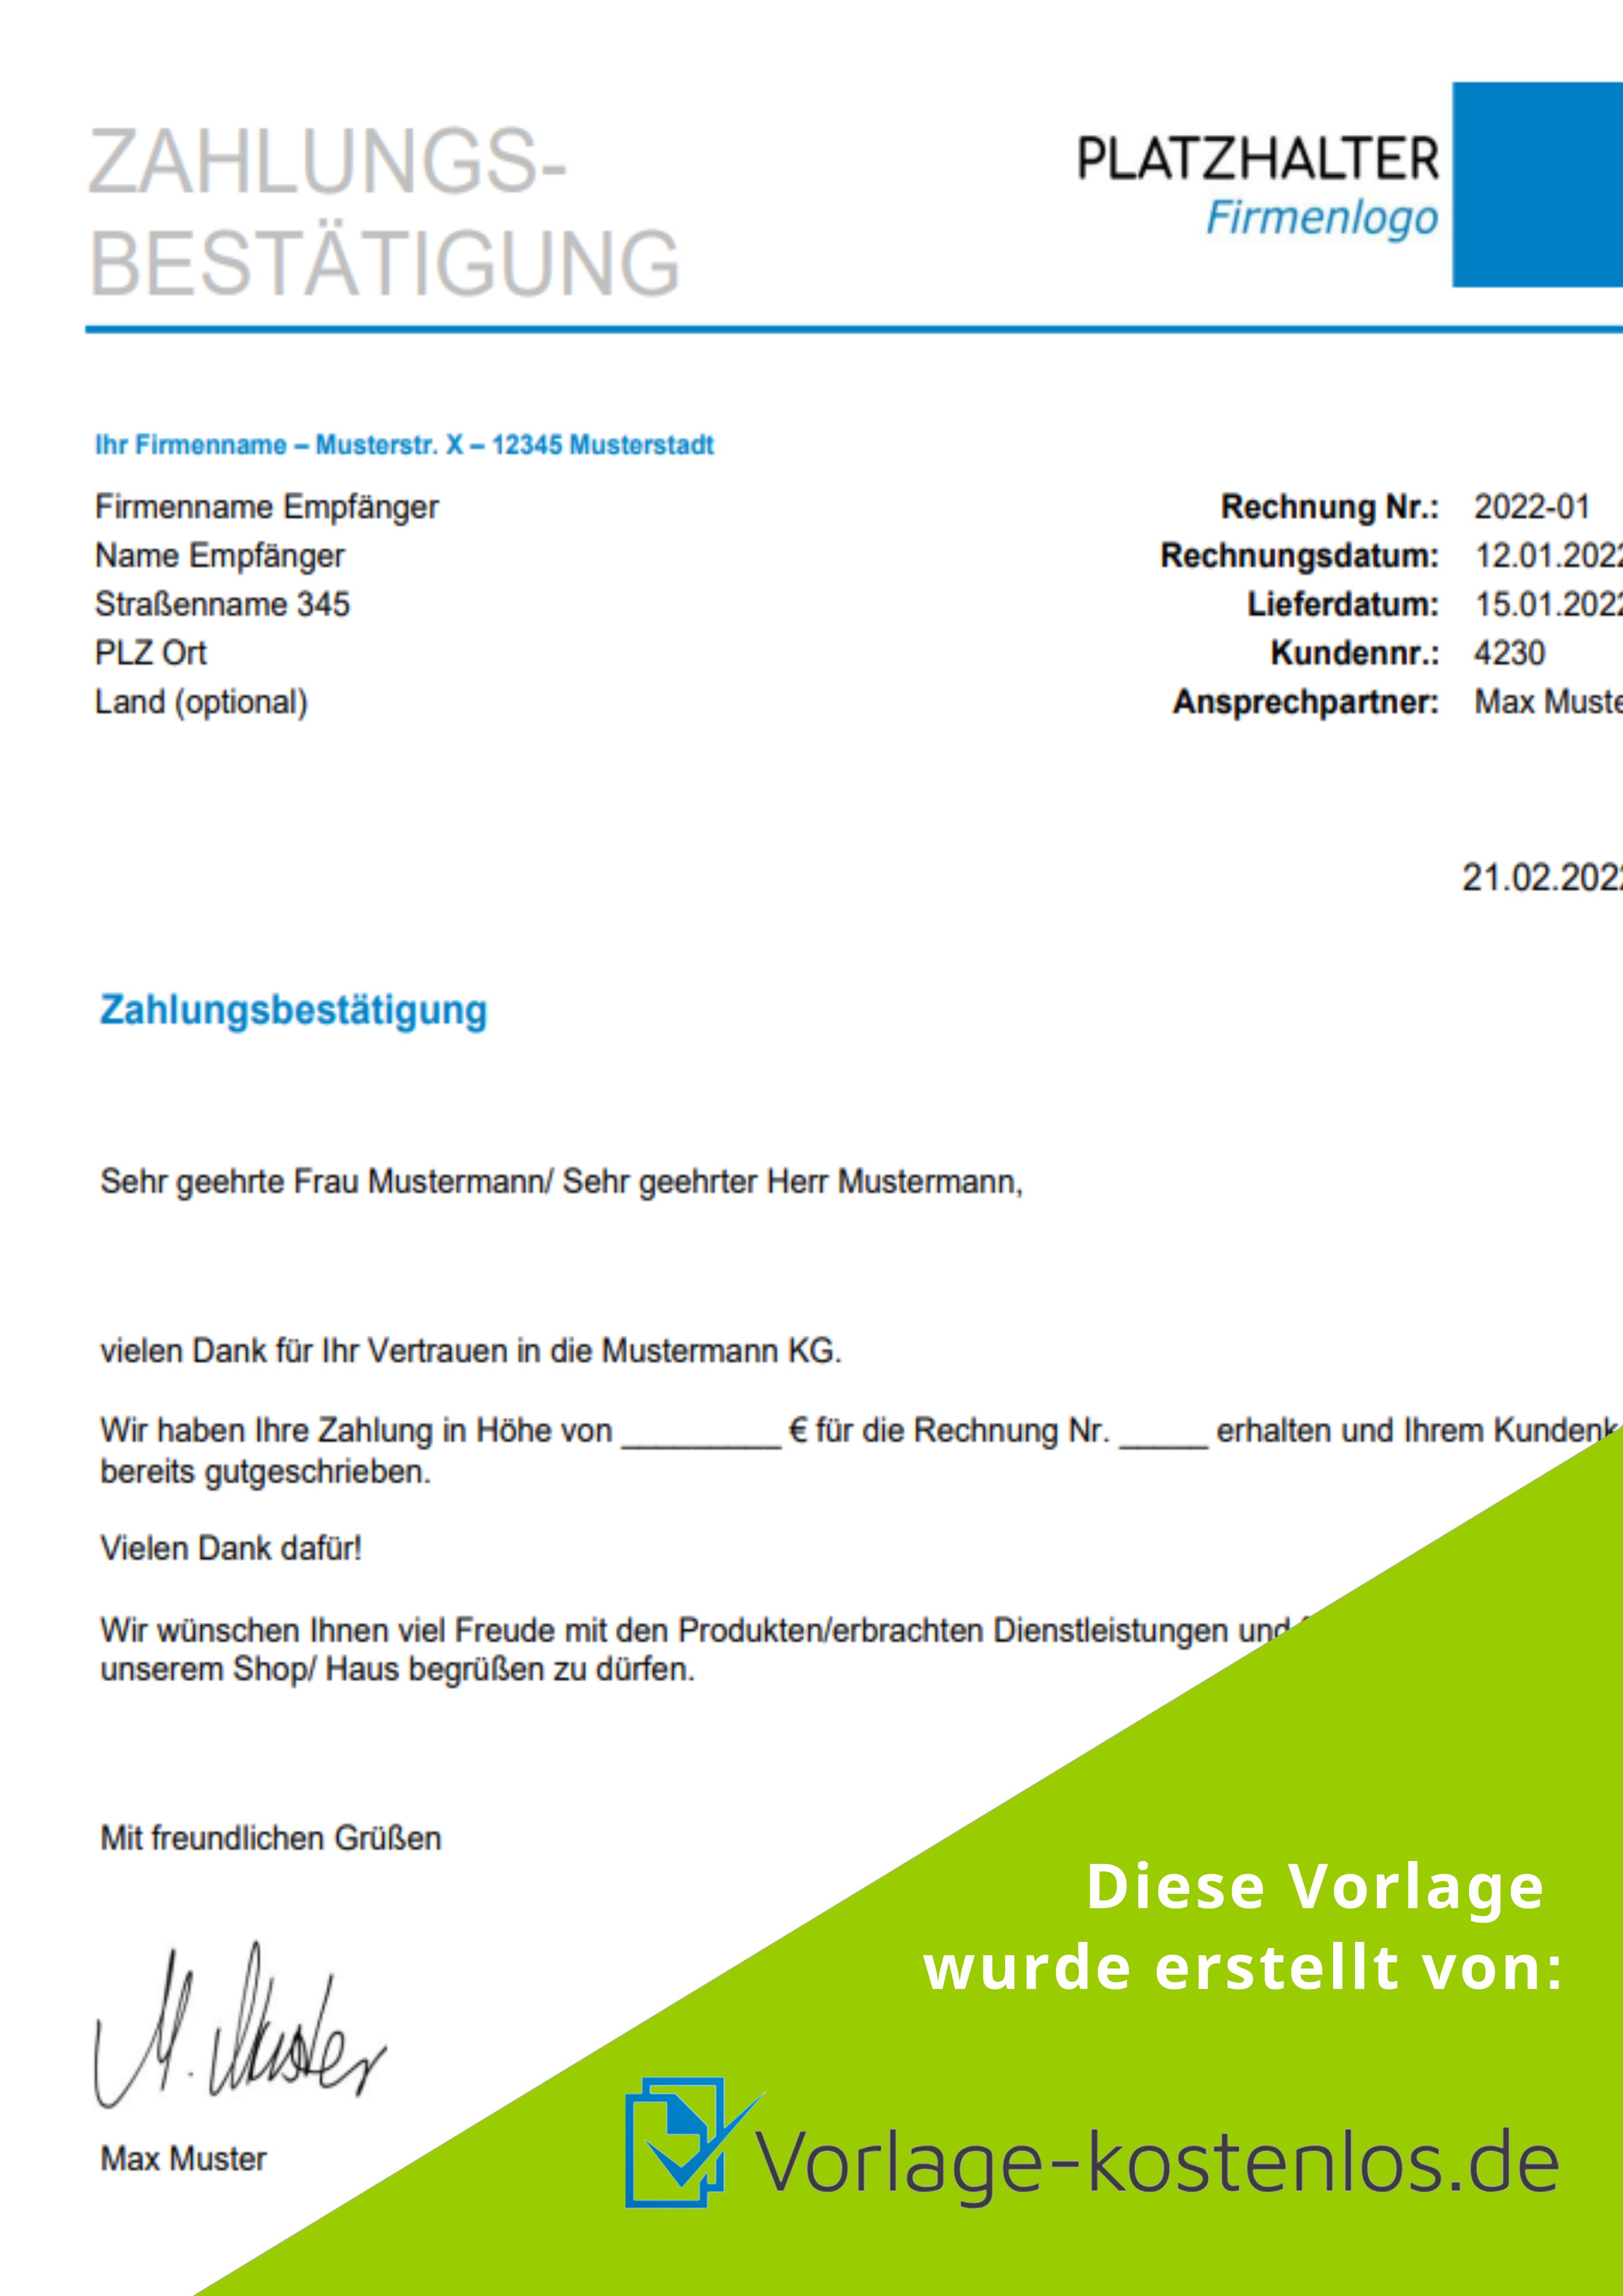 Zahlungsbestaetigung Vorlage Muster-Beispiel & Vordruck zum Download von vorlage-kostenlos.de